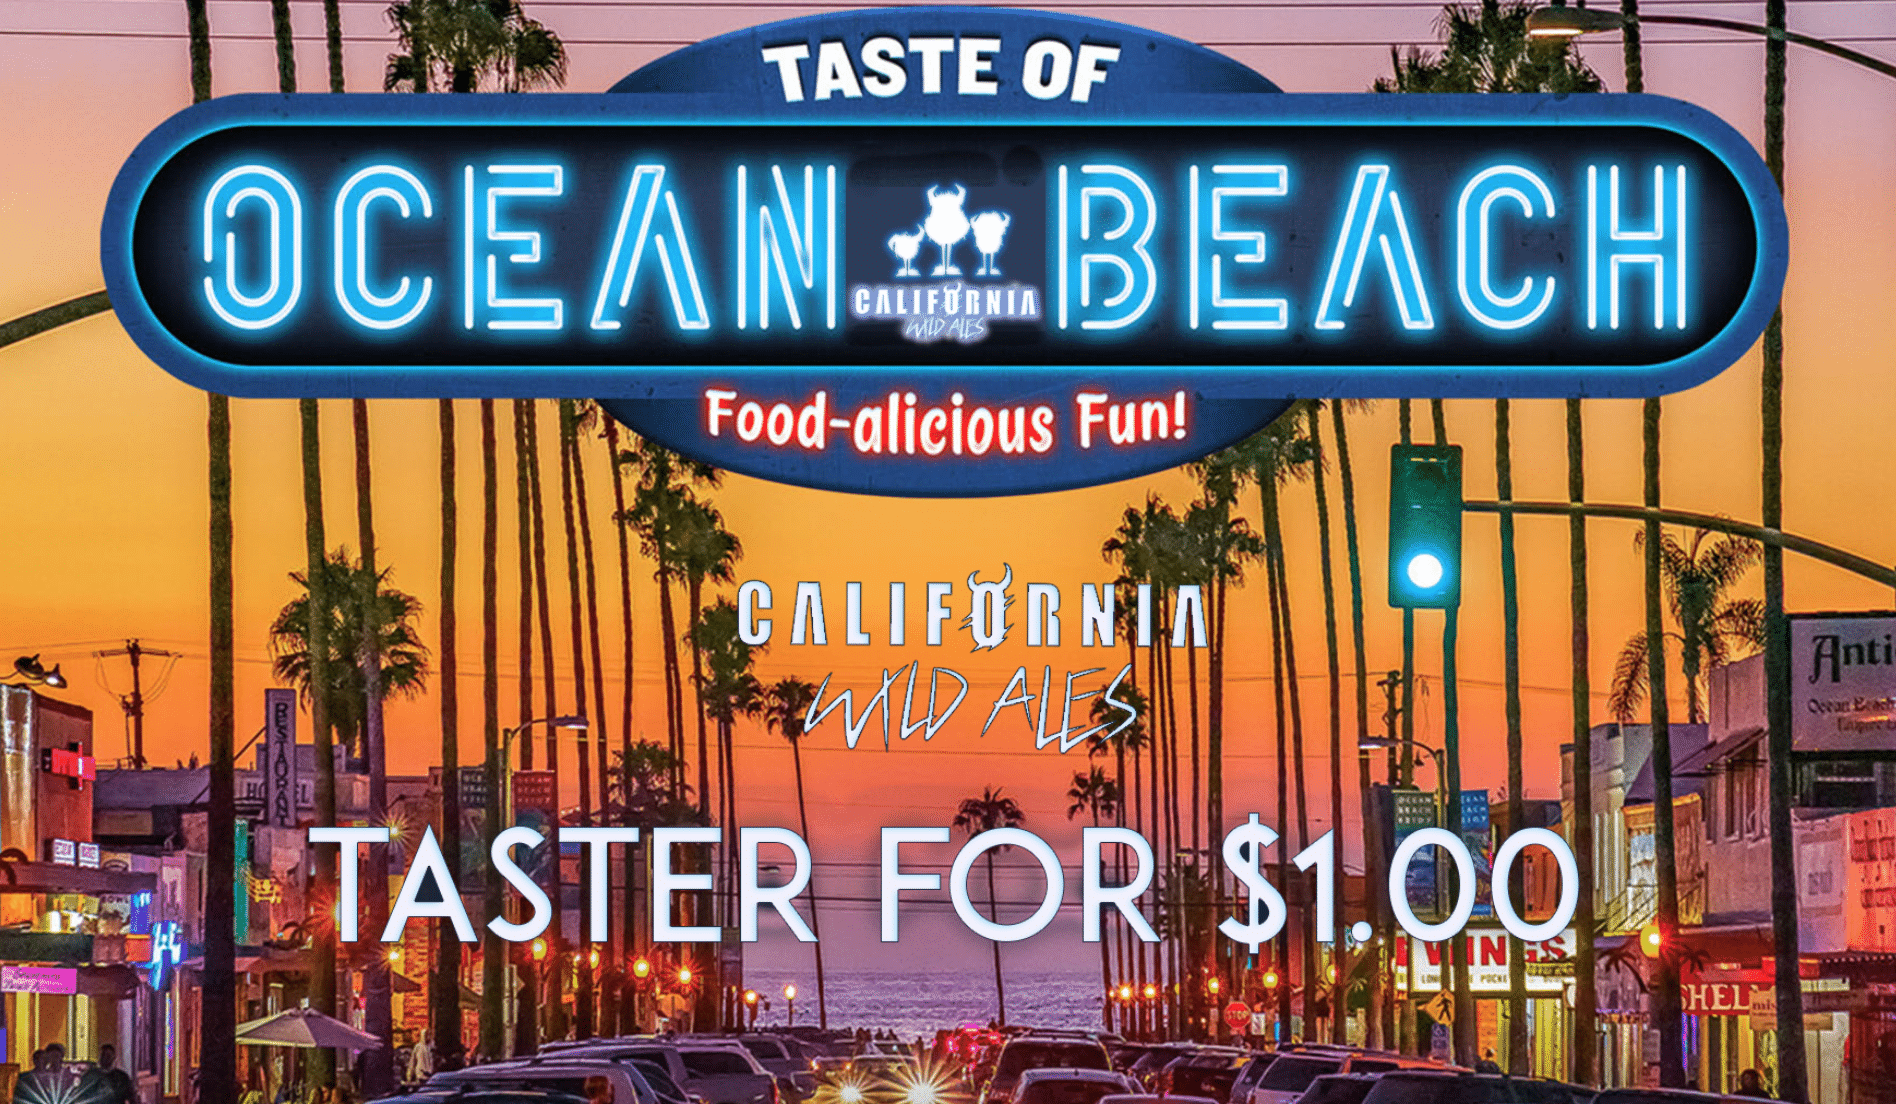 Taste of Ocean Beach